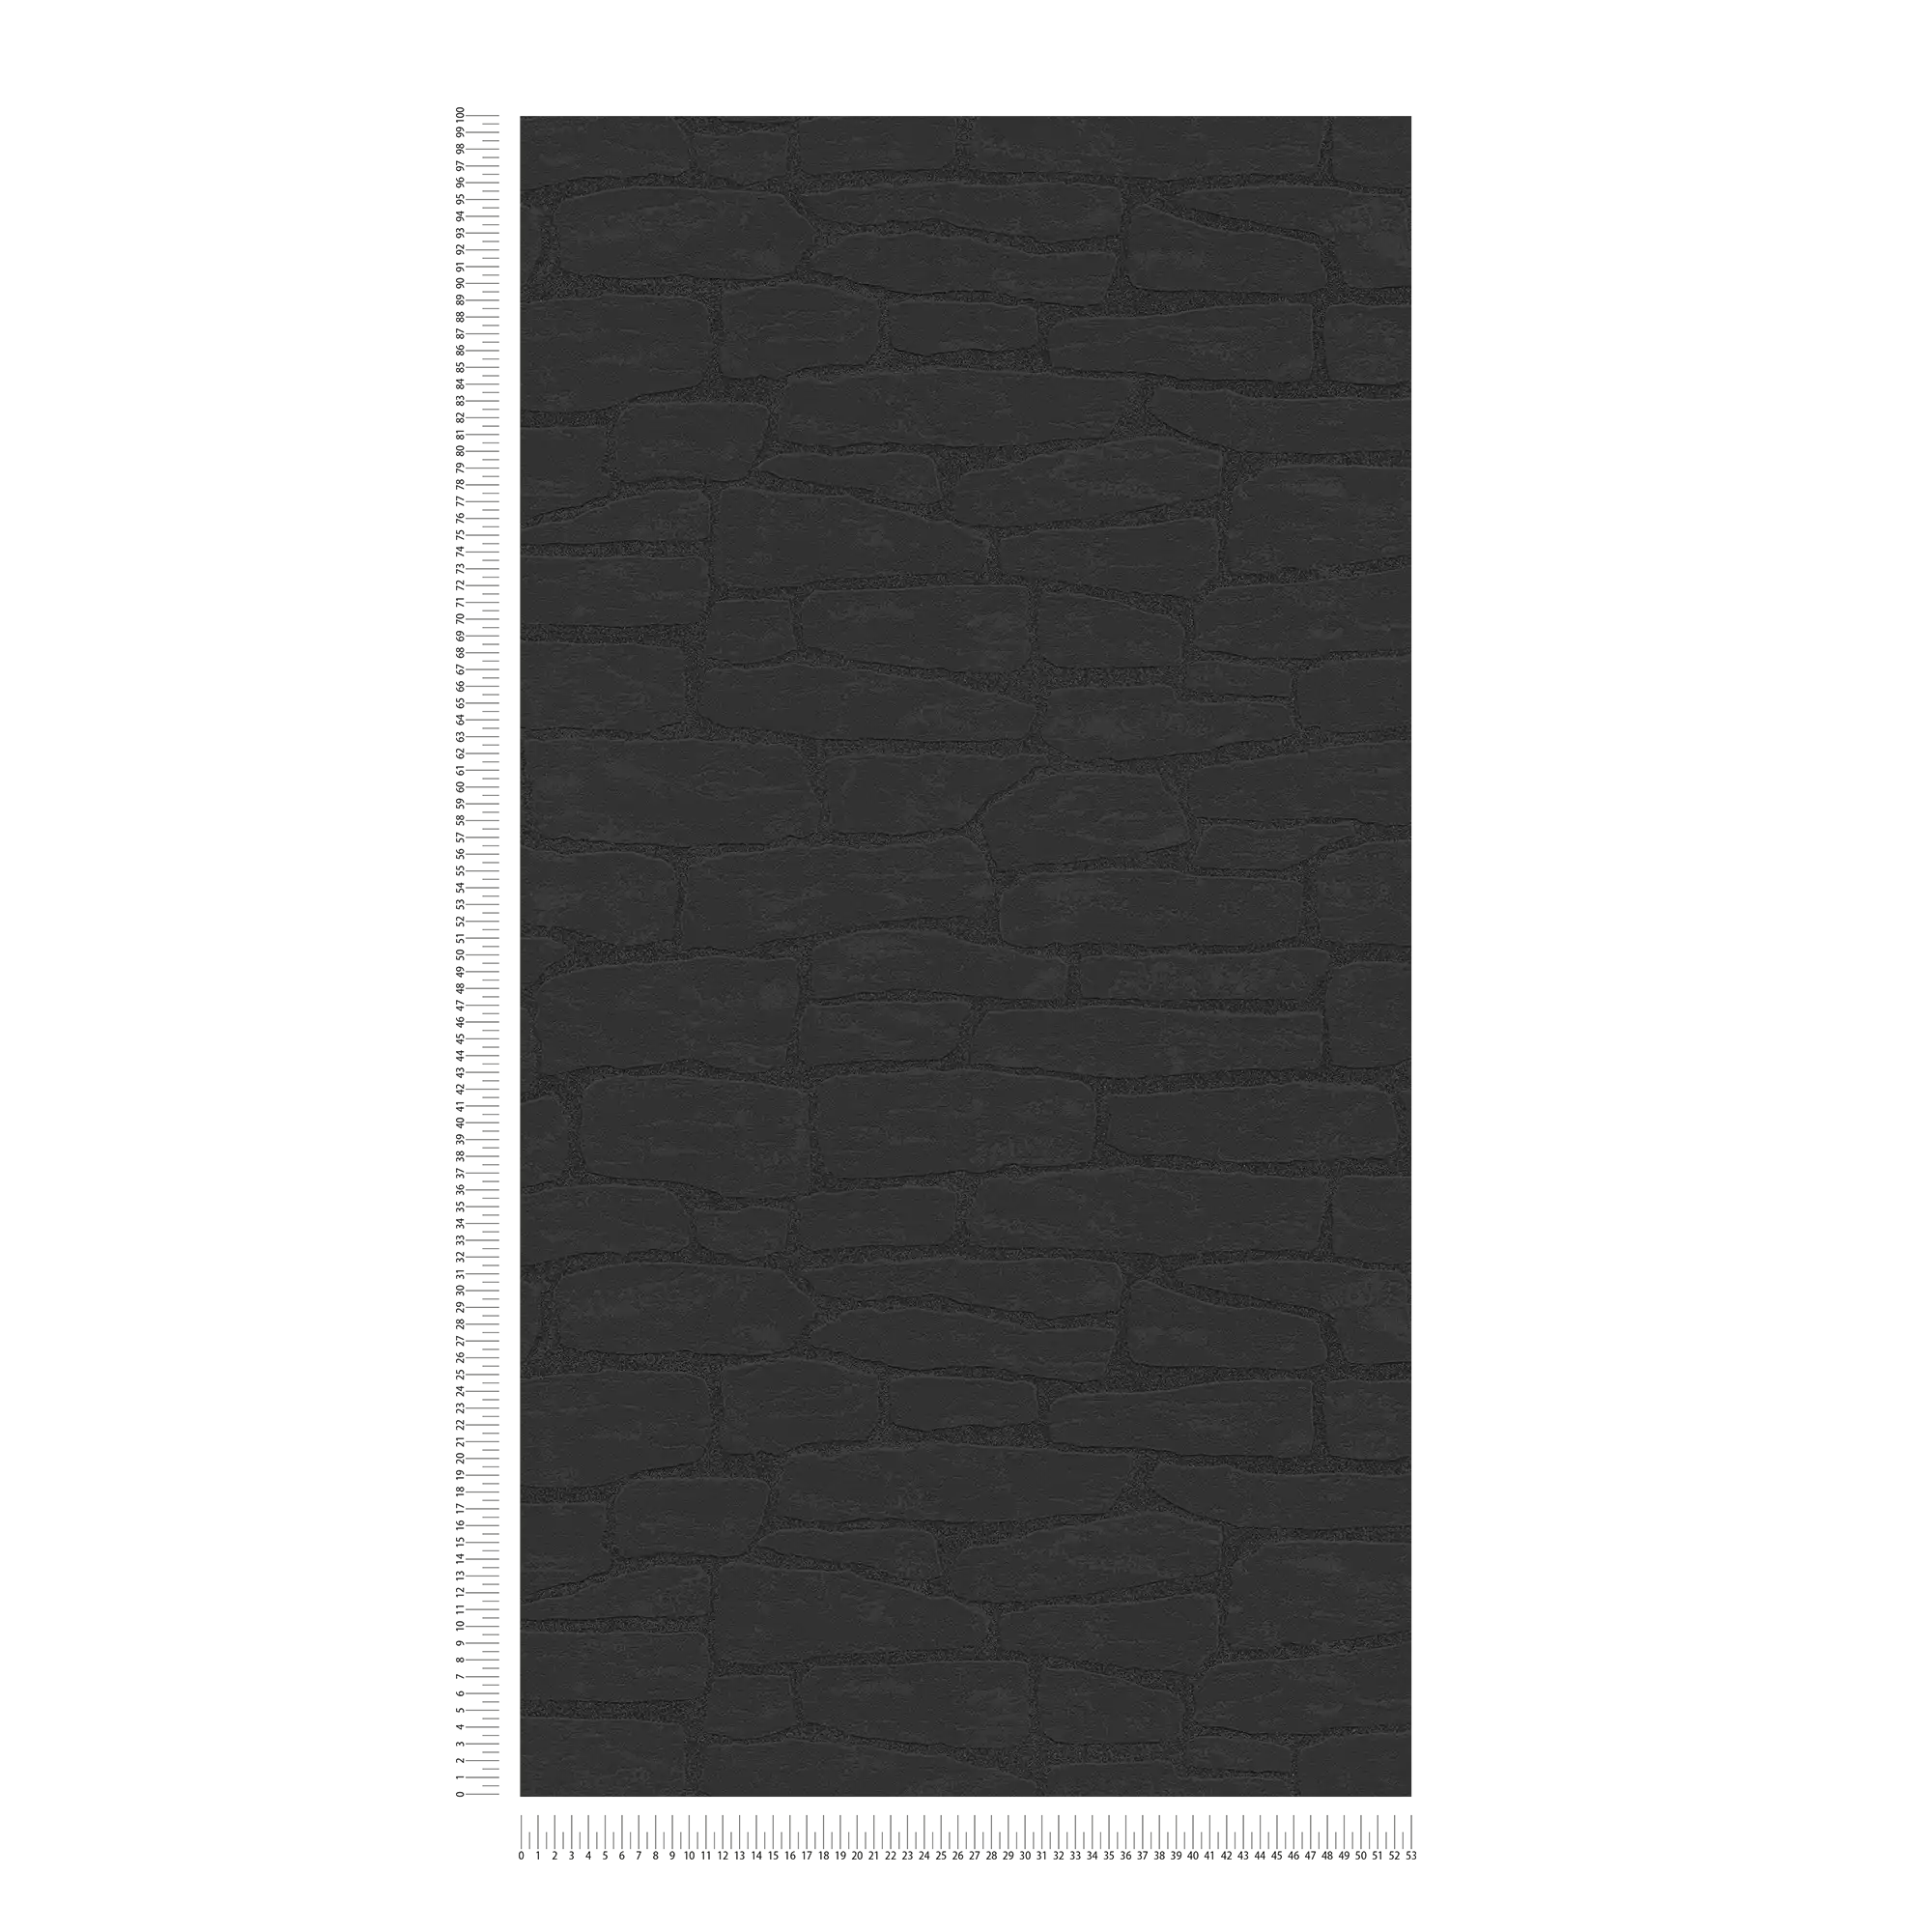             Carta da parati in pietra con motivo strutturato ed effetto 3D - nero
        